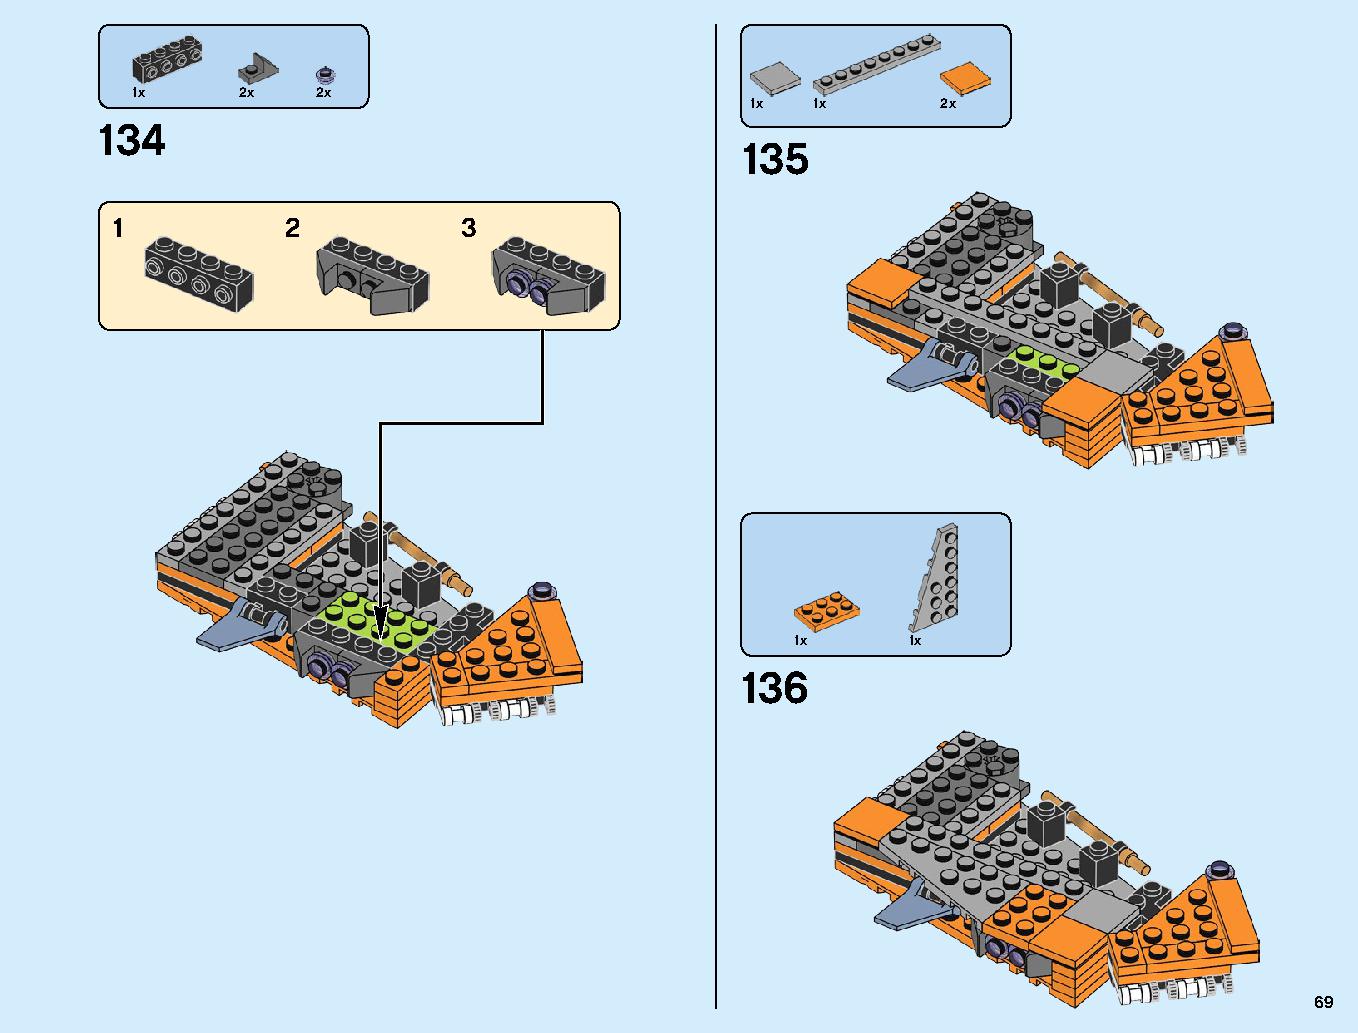 어벤져스 타노스: 최후의 전투 76107 레고 세트 제품정보 레고 조립설명서 69 page